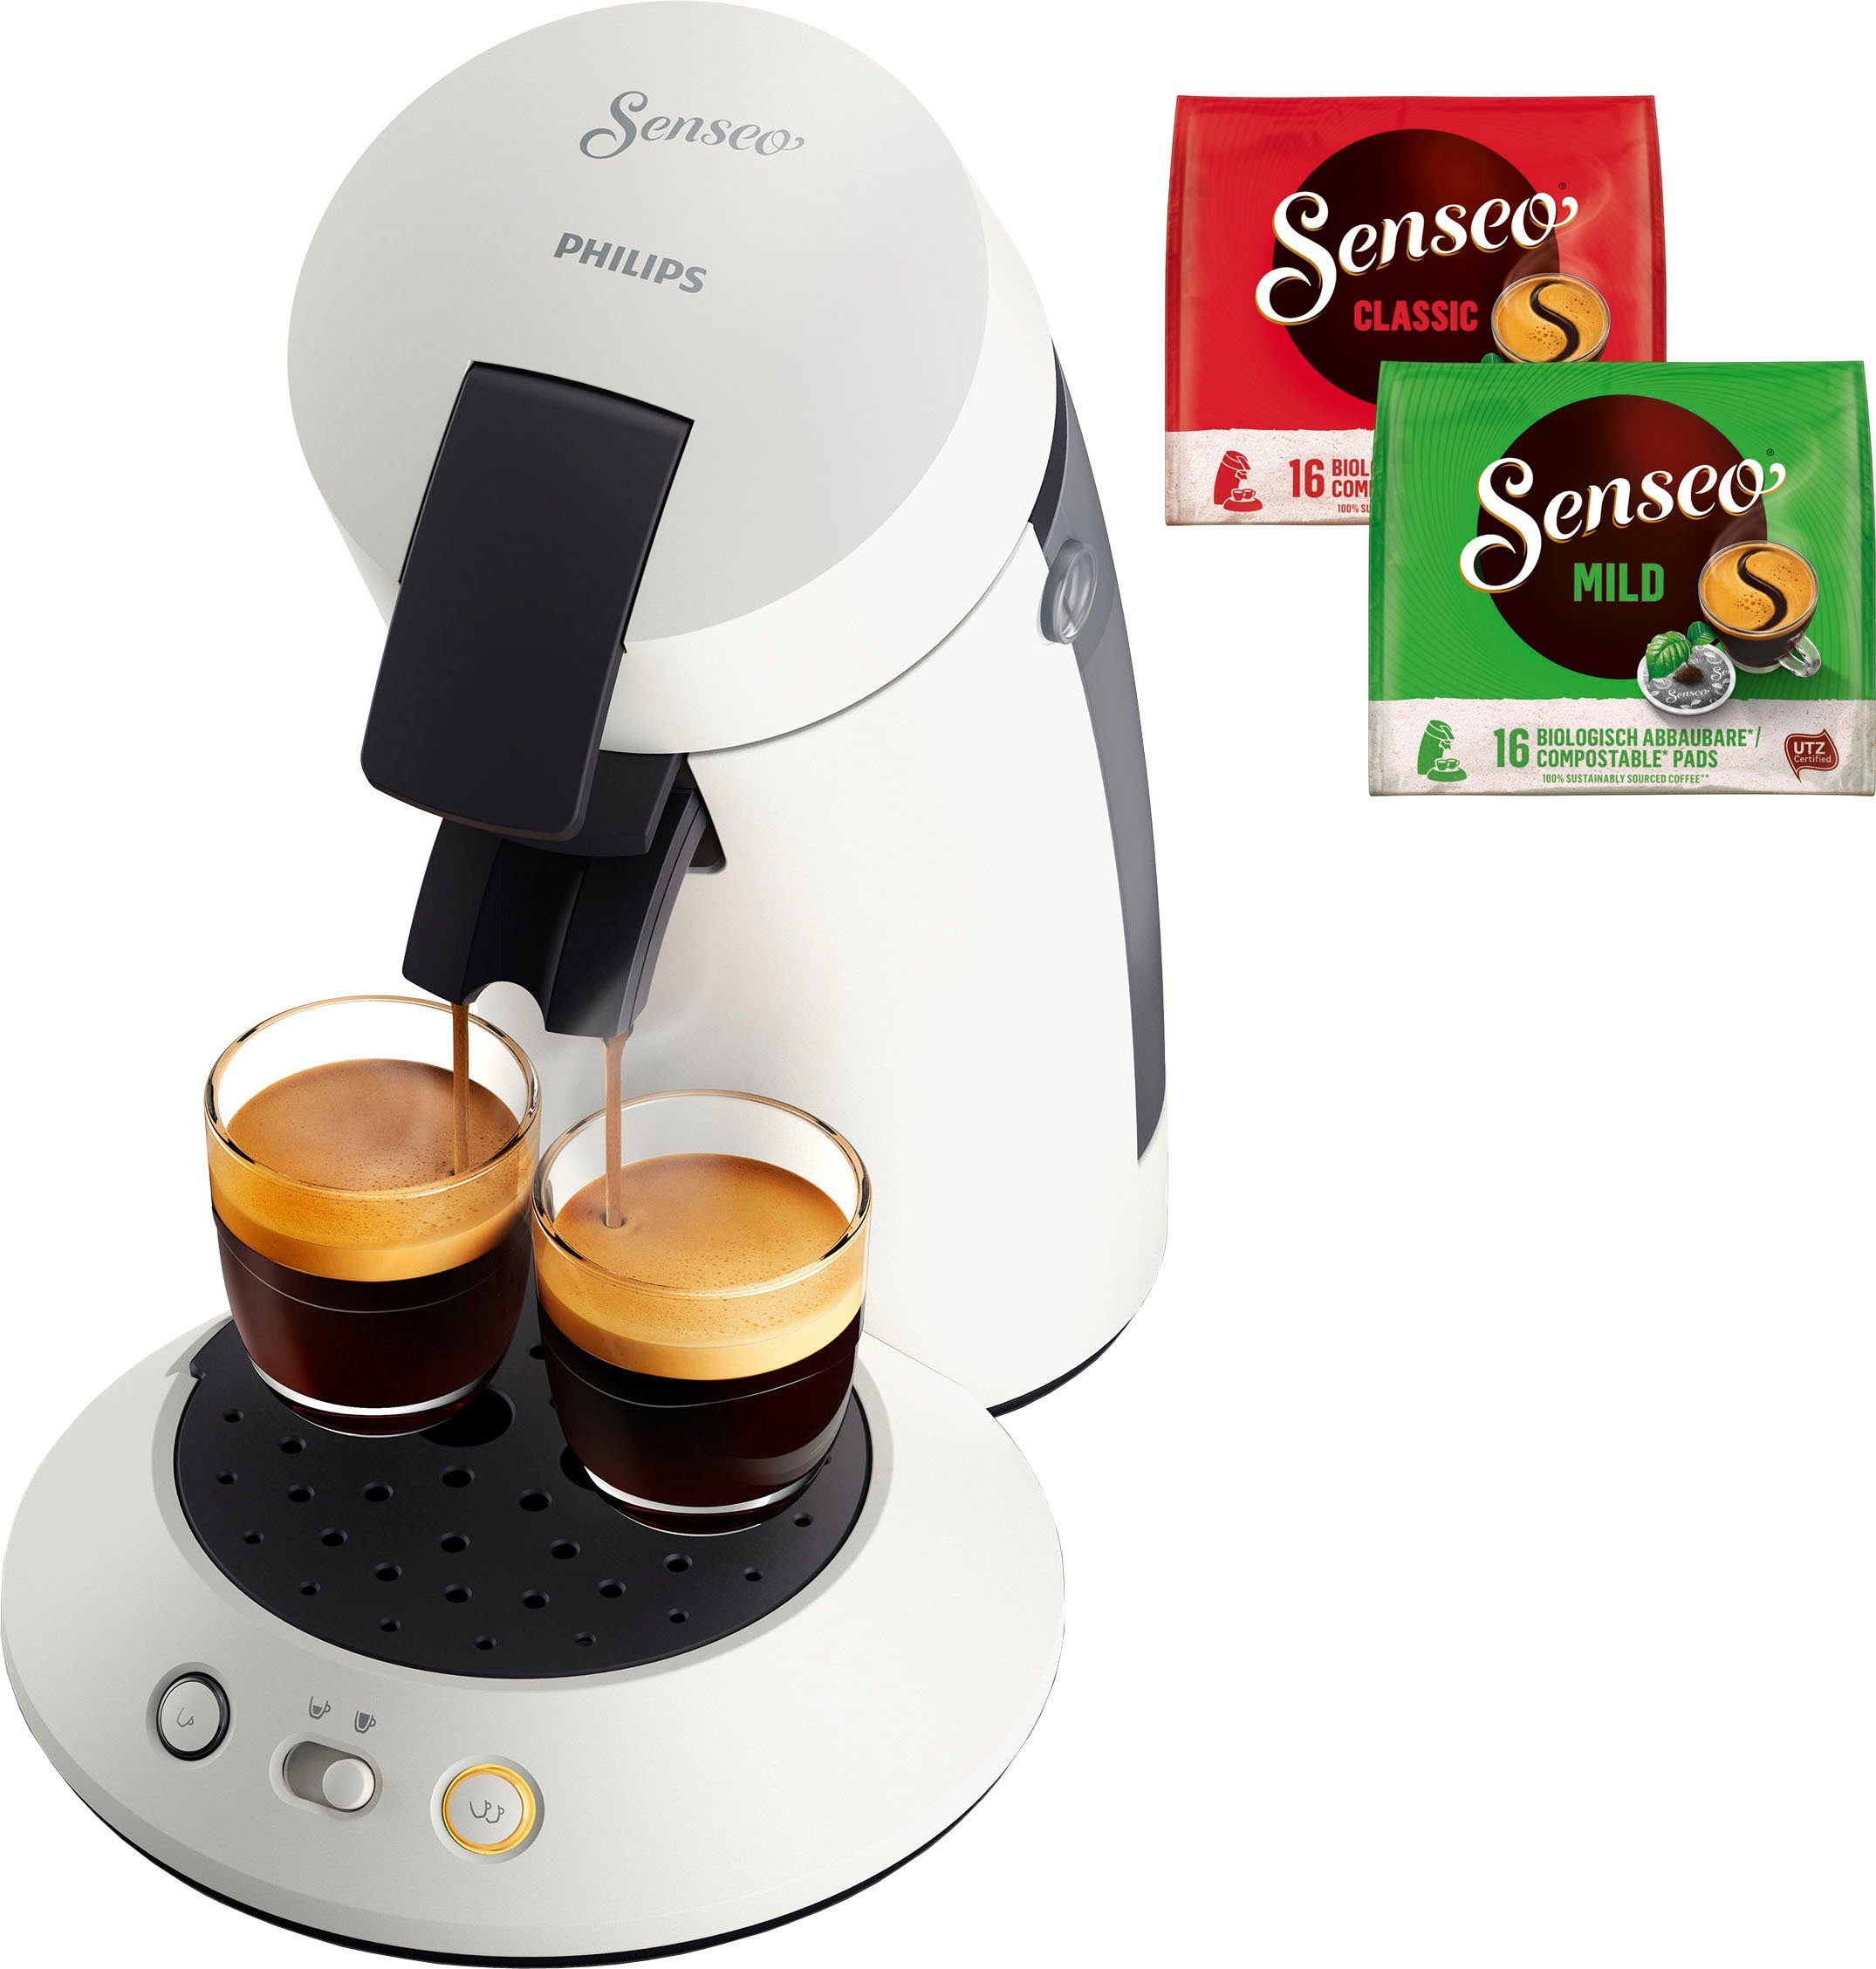 Senseo Koffiepadautomaat Original CSA210/10, toebehoren ter waarde van 5,- vap in de online winkel |